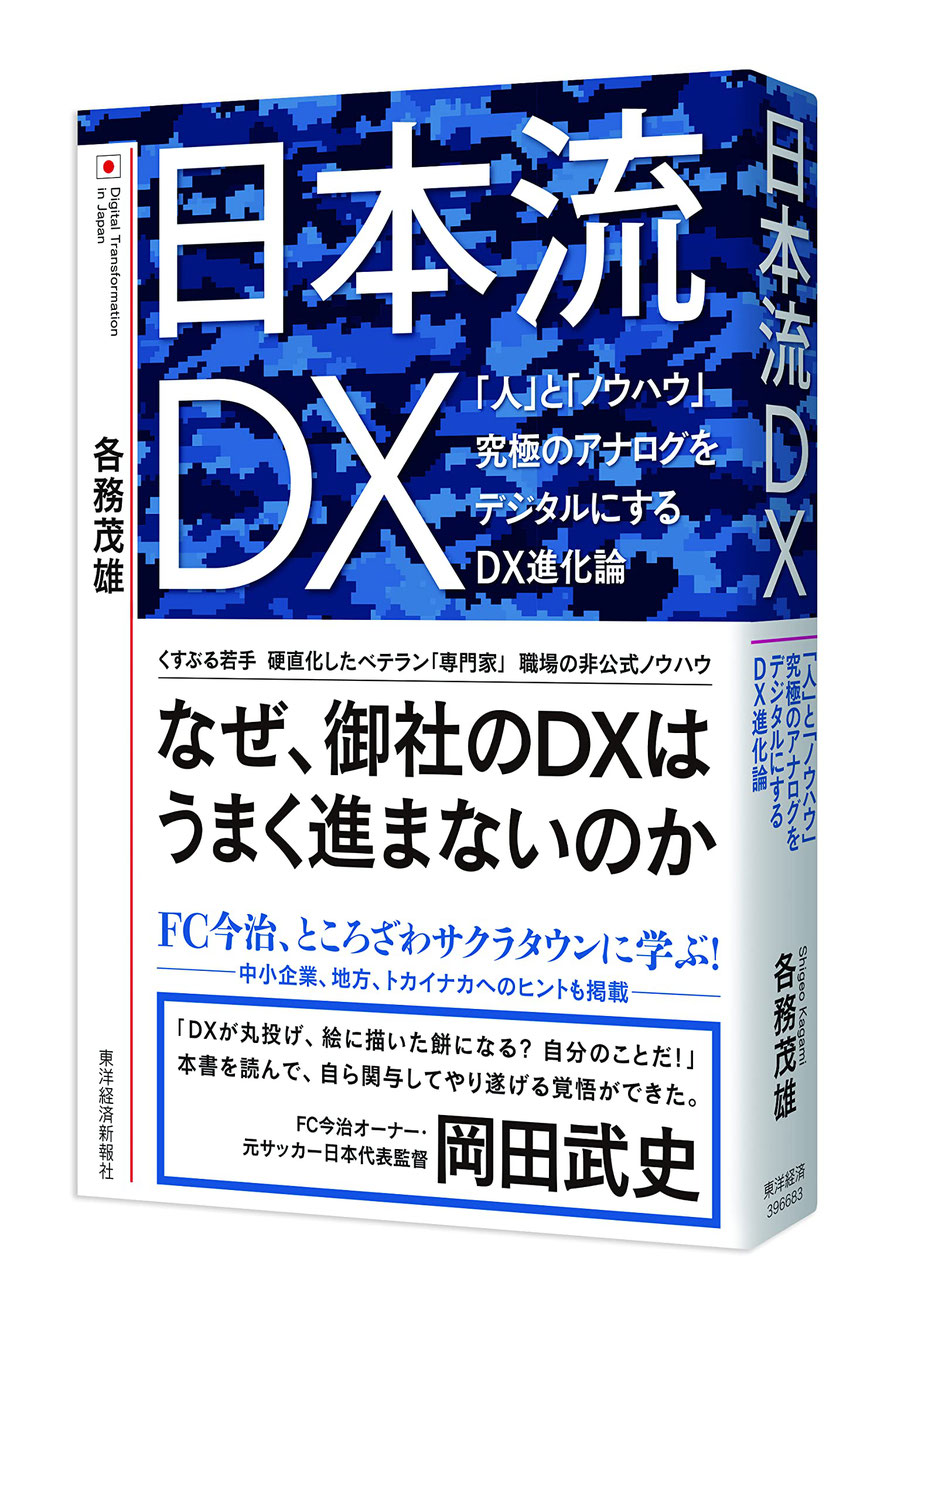 『日本流DX』各務茂雄